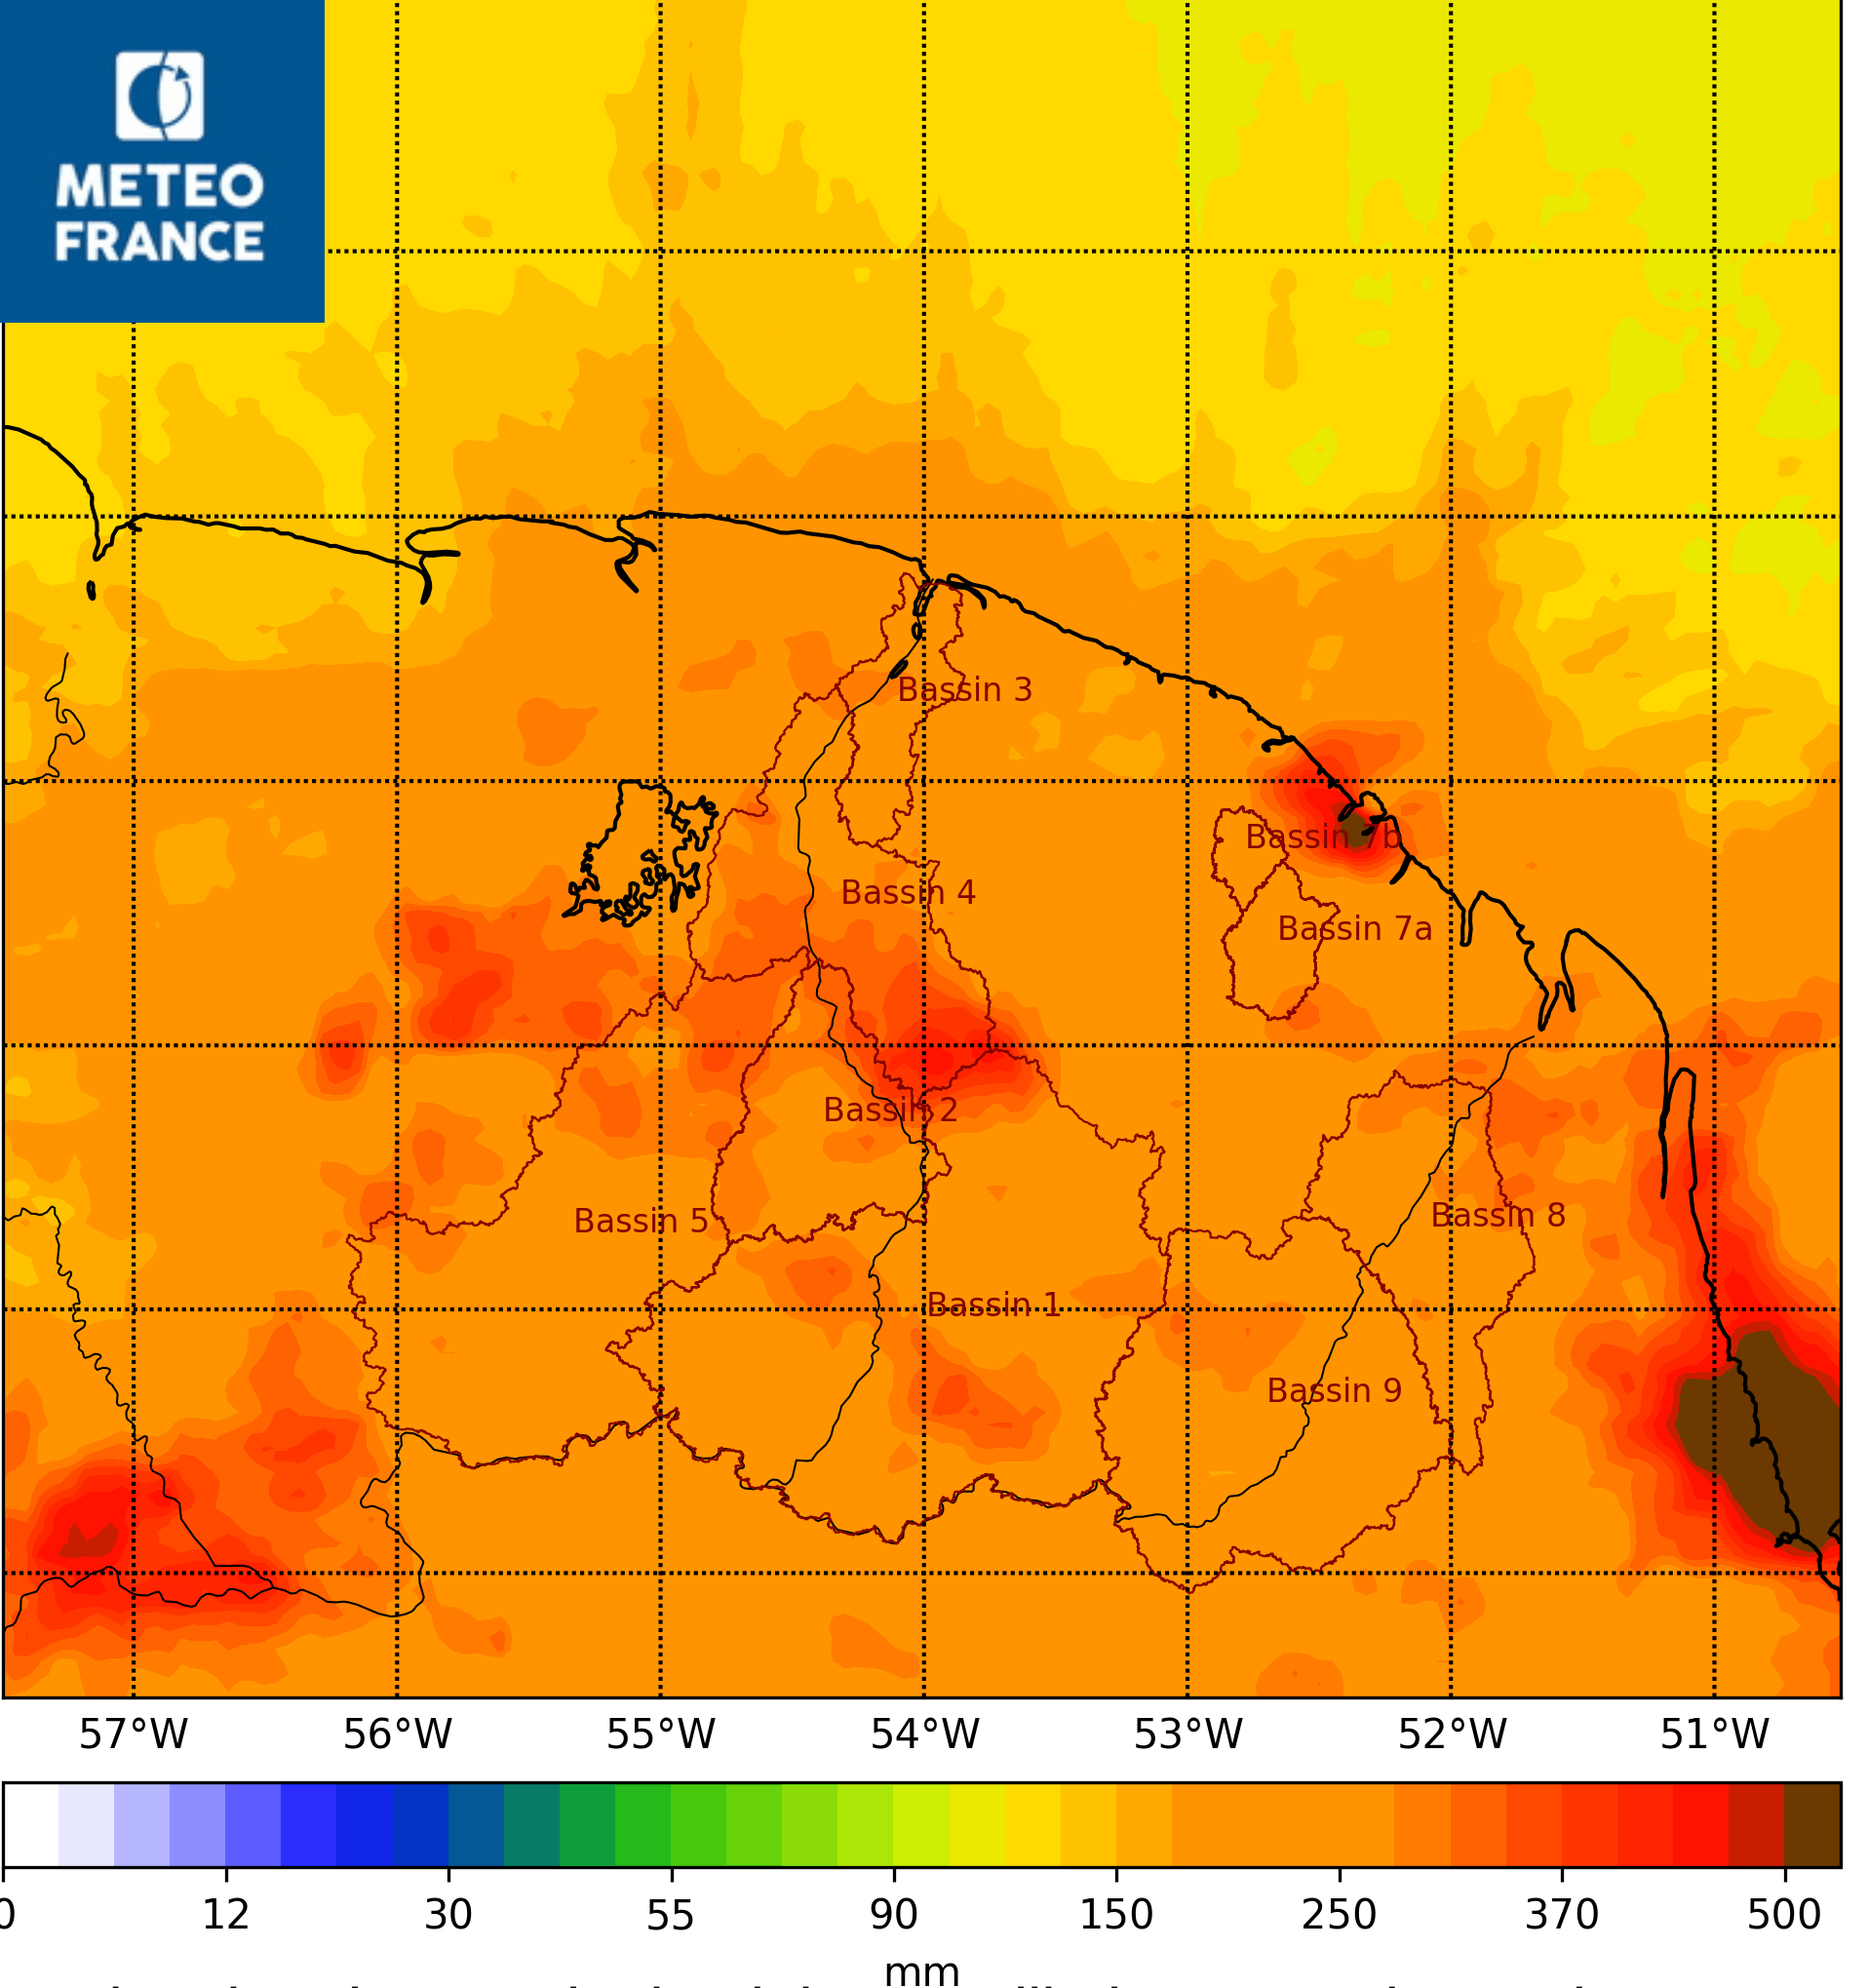 Estimation satellitaires de cumuls de pluies entre le 1 et le 10 mars